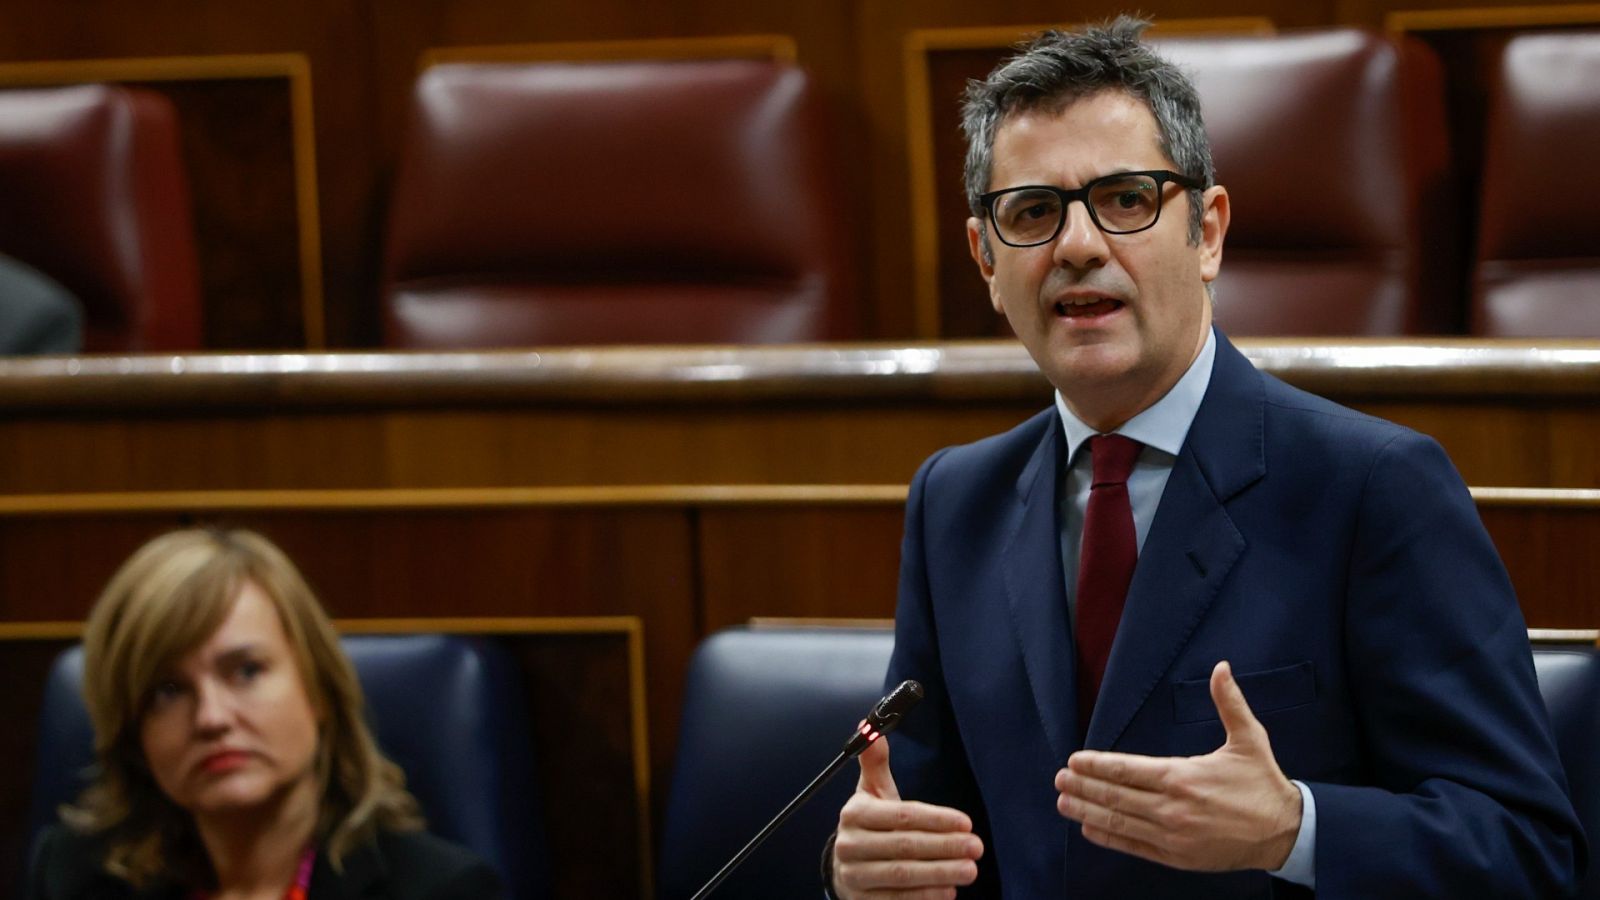 El PP acusa al Gobierno de "grave nepotismo" por "favorecer" al marido de Calviño en Patrimonio Nacional